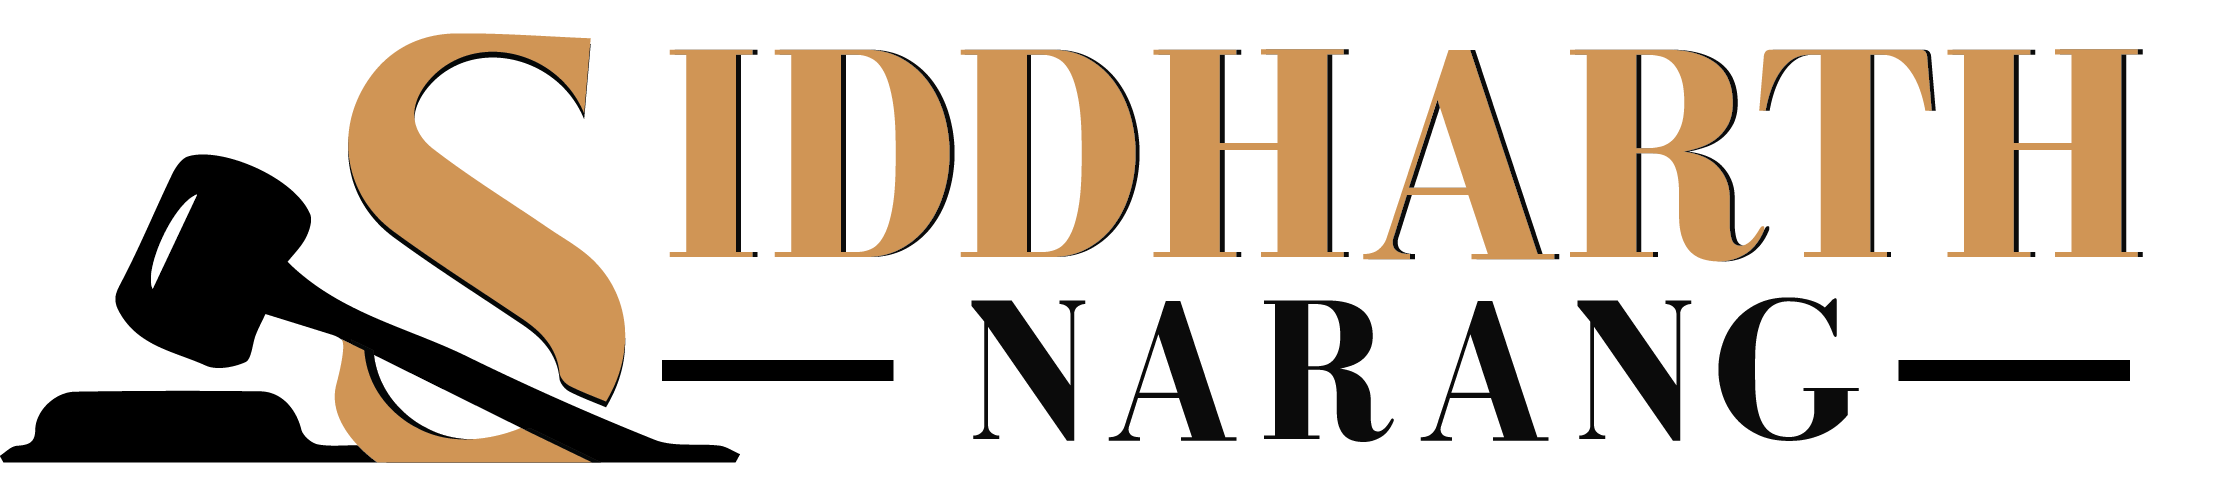 Siddharth Narang